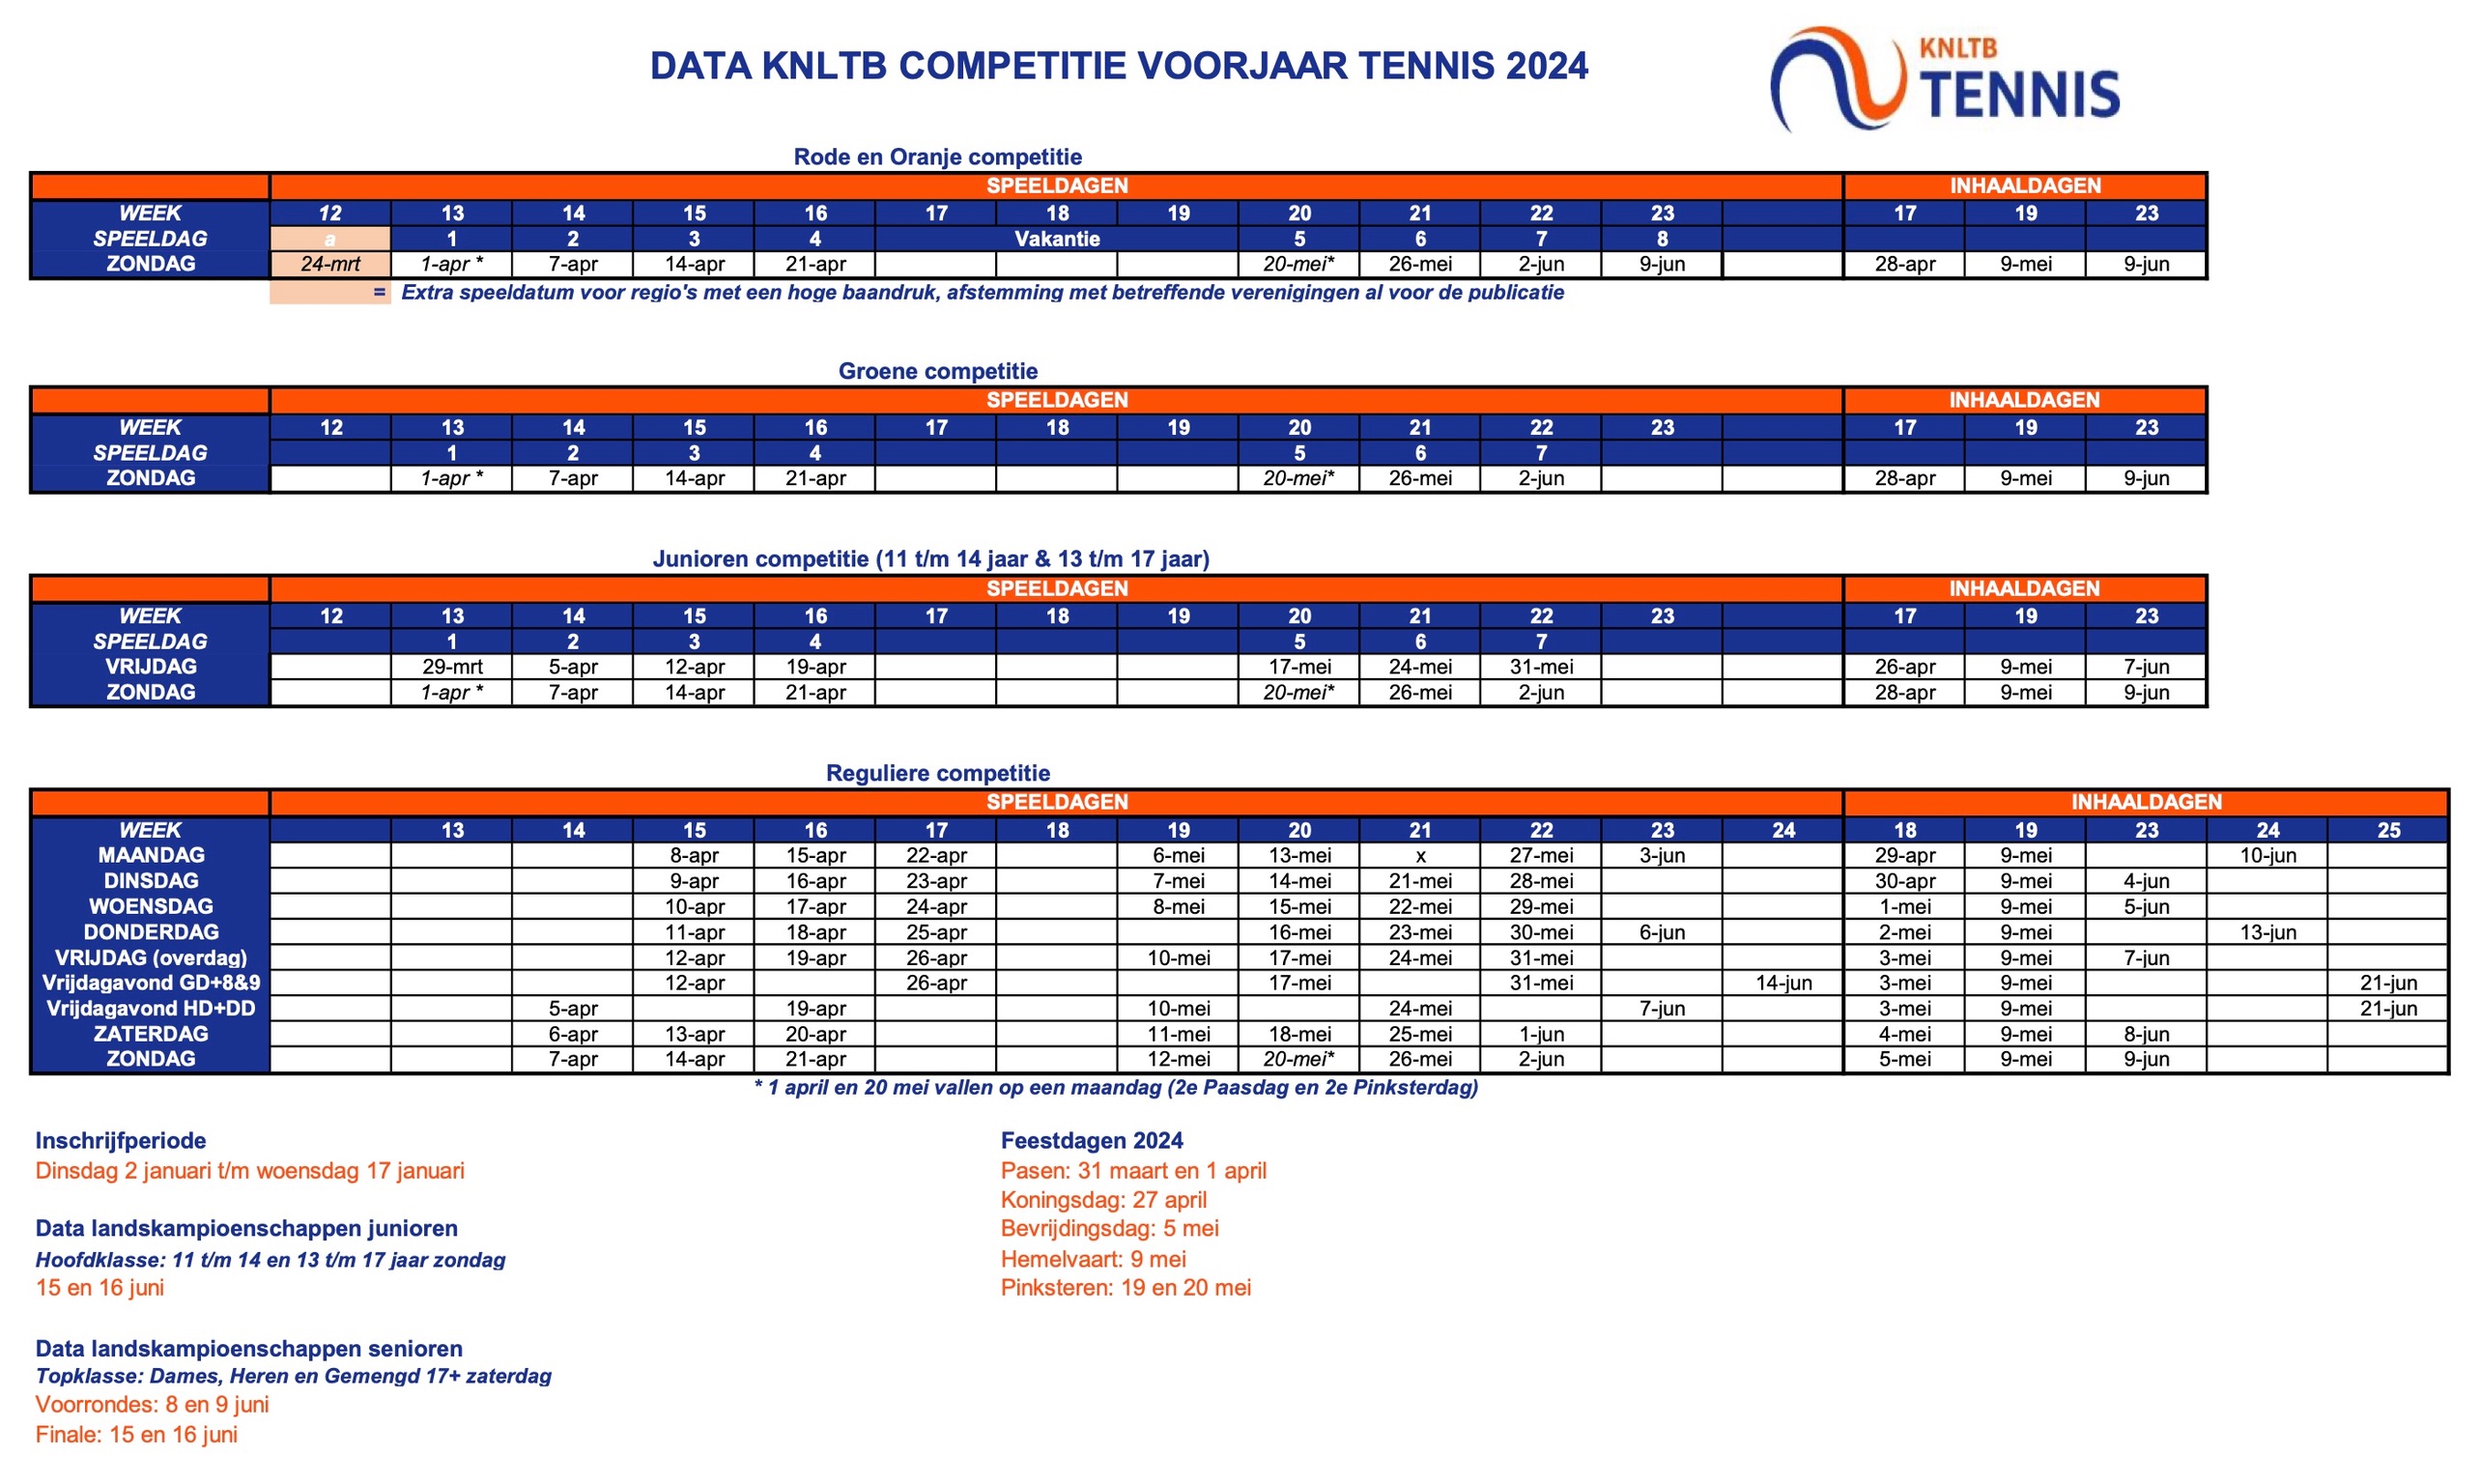 Data KNLTB tenniscompetitie voorjaar 2024 